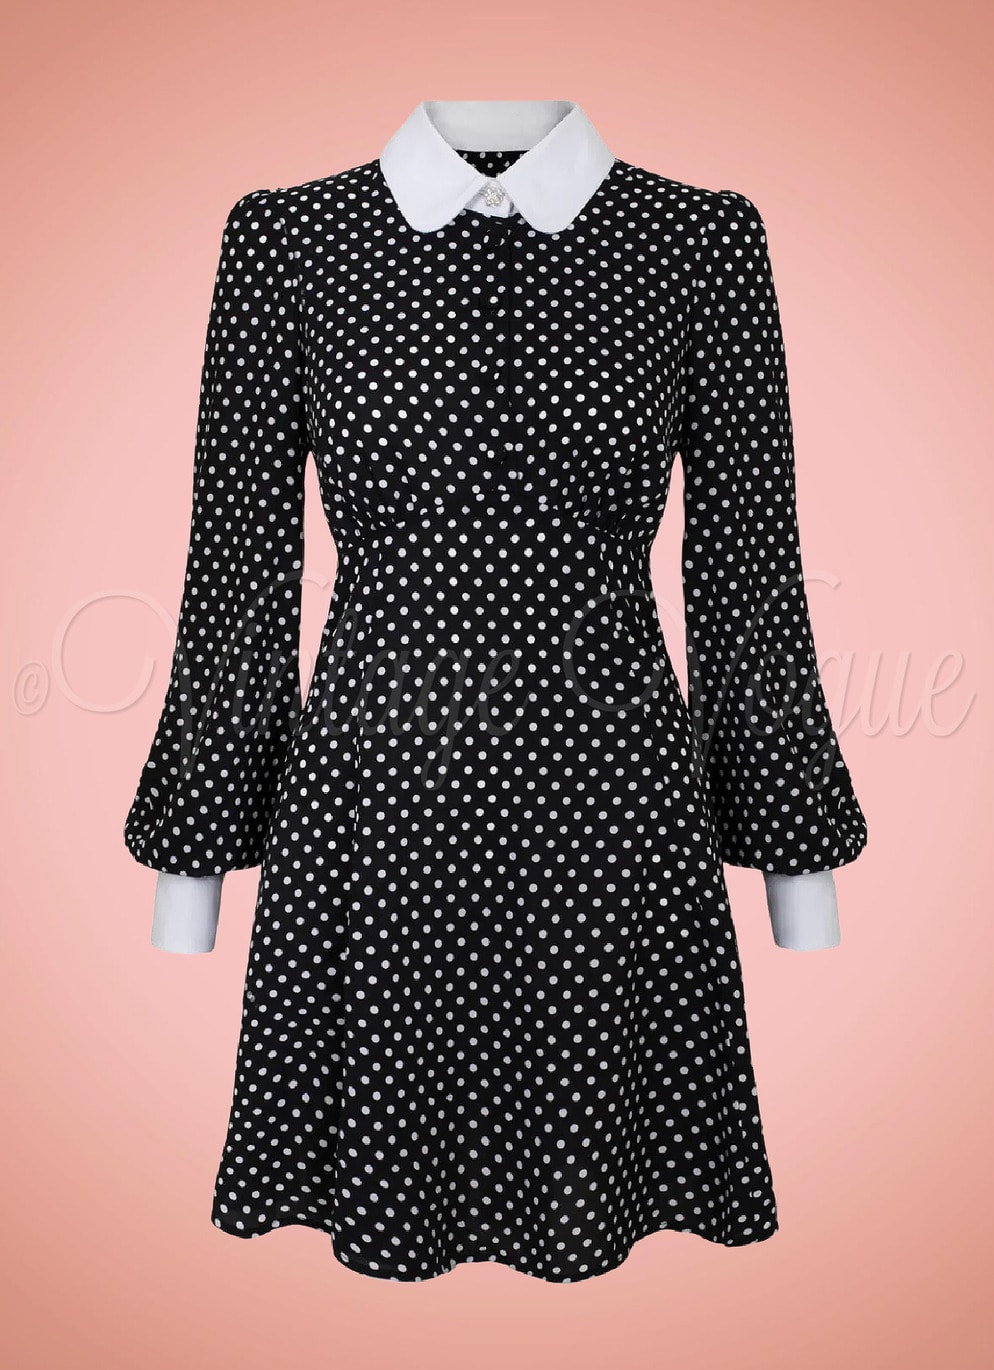 Hell Bunny 60er Jahre Retro Punkte Mini Kleid Naomi Dress in Schwarz Weiß Damenkleid Blusenkleid Büro Office Business Punkte gepunktet